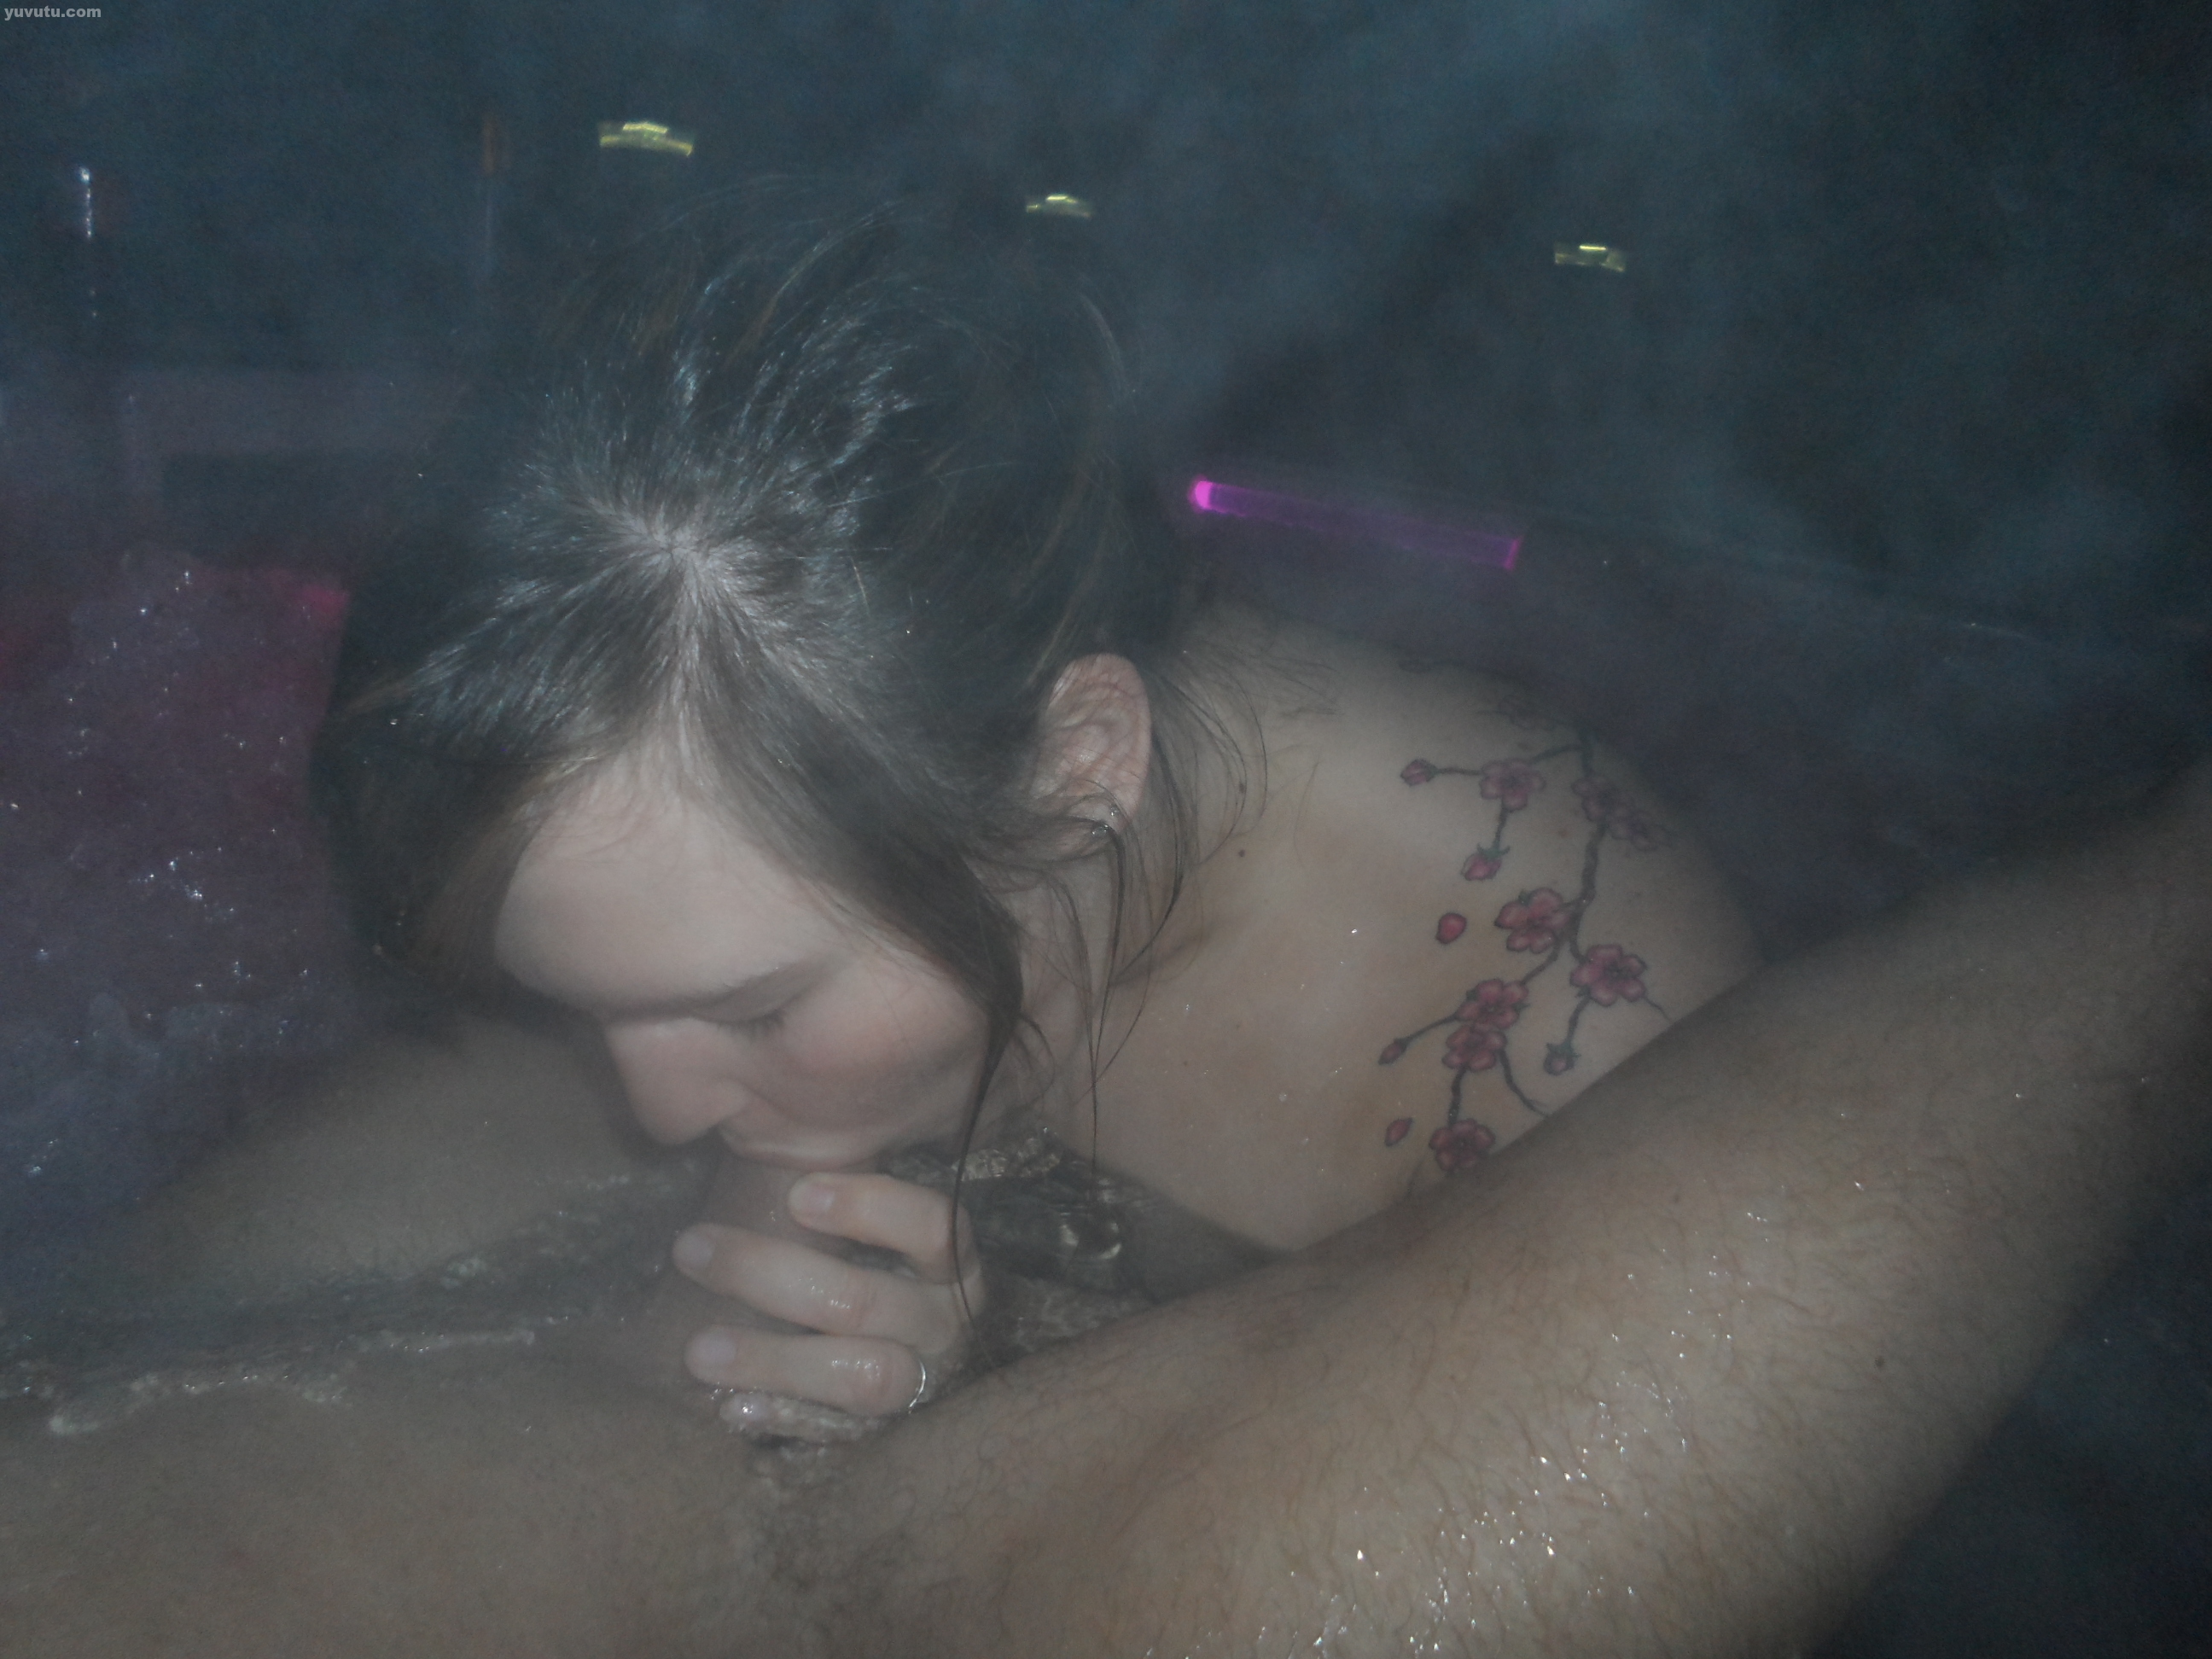 Porn pic in hot tub - Porno photo